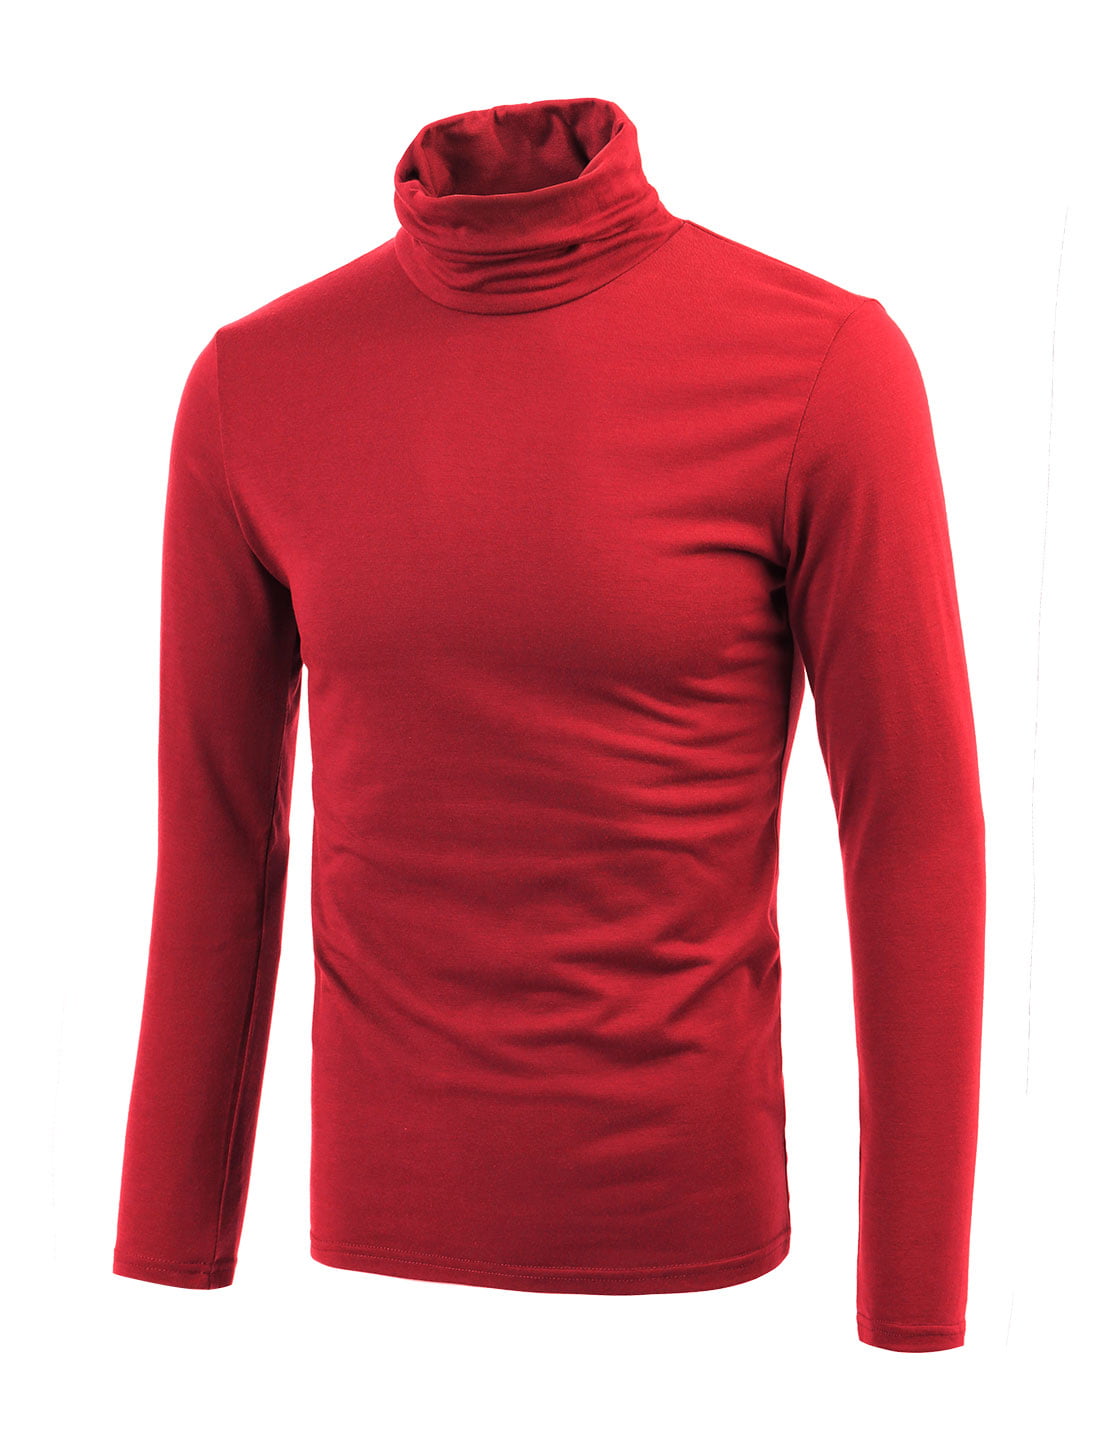 Men Soft Slipover Turtle Neck Full Sleeves Stretchy Shirt Red L ...